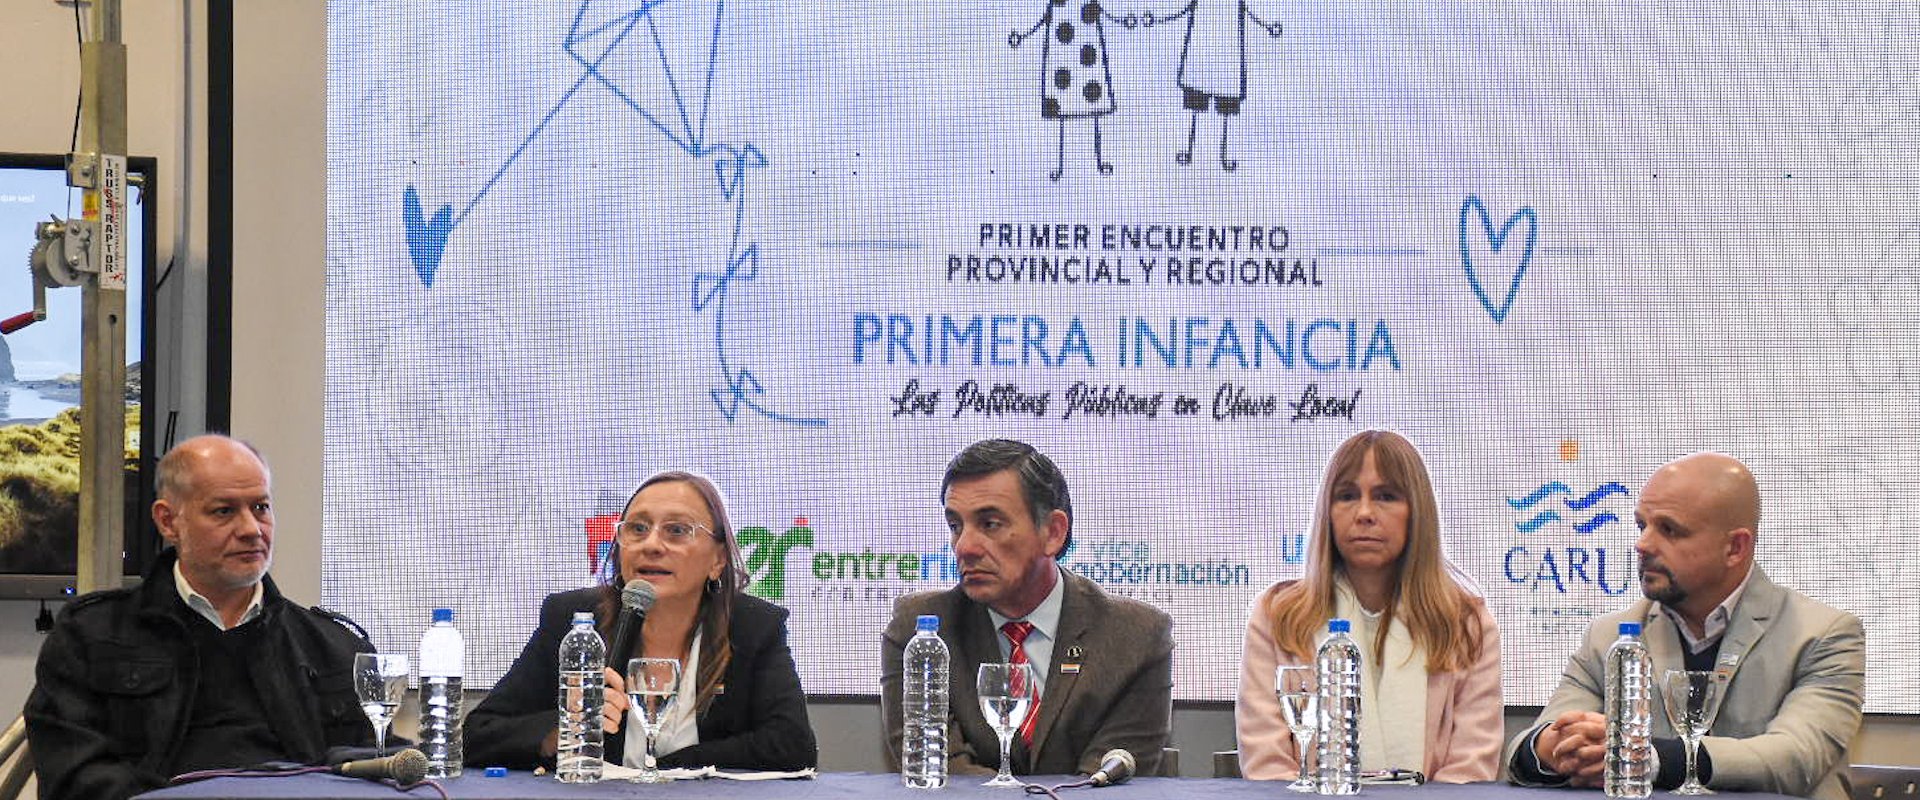 Las políticas públicas de primera infancia constituyen una prioridad del gobierno provincial